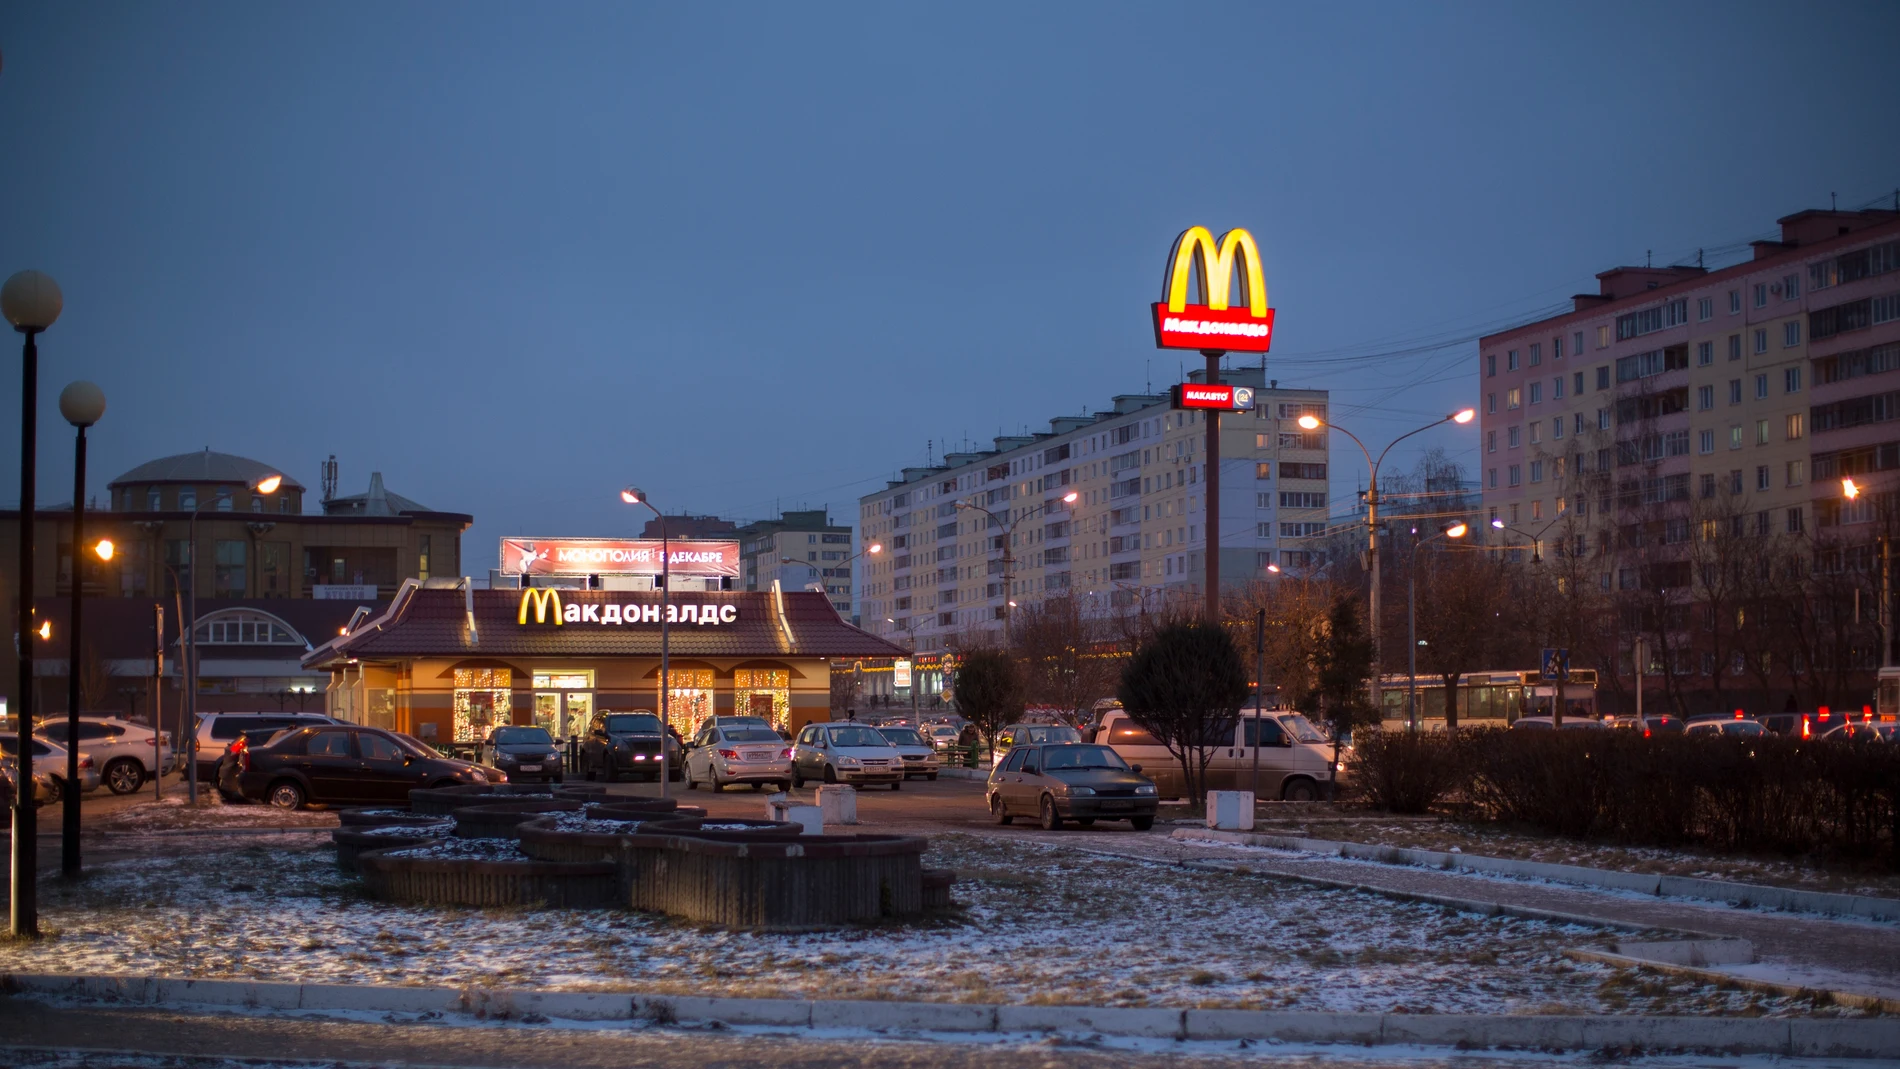 Imagen de un McDonald's en la ciudad rusa de Dmitrov